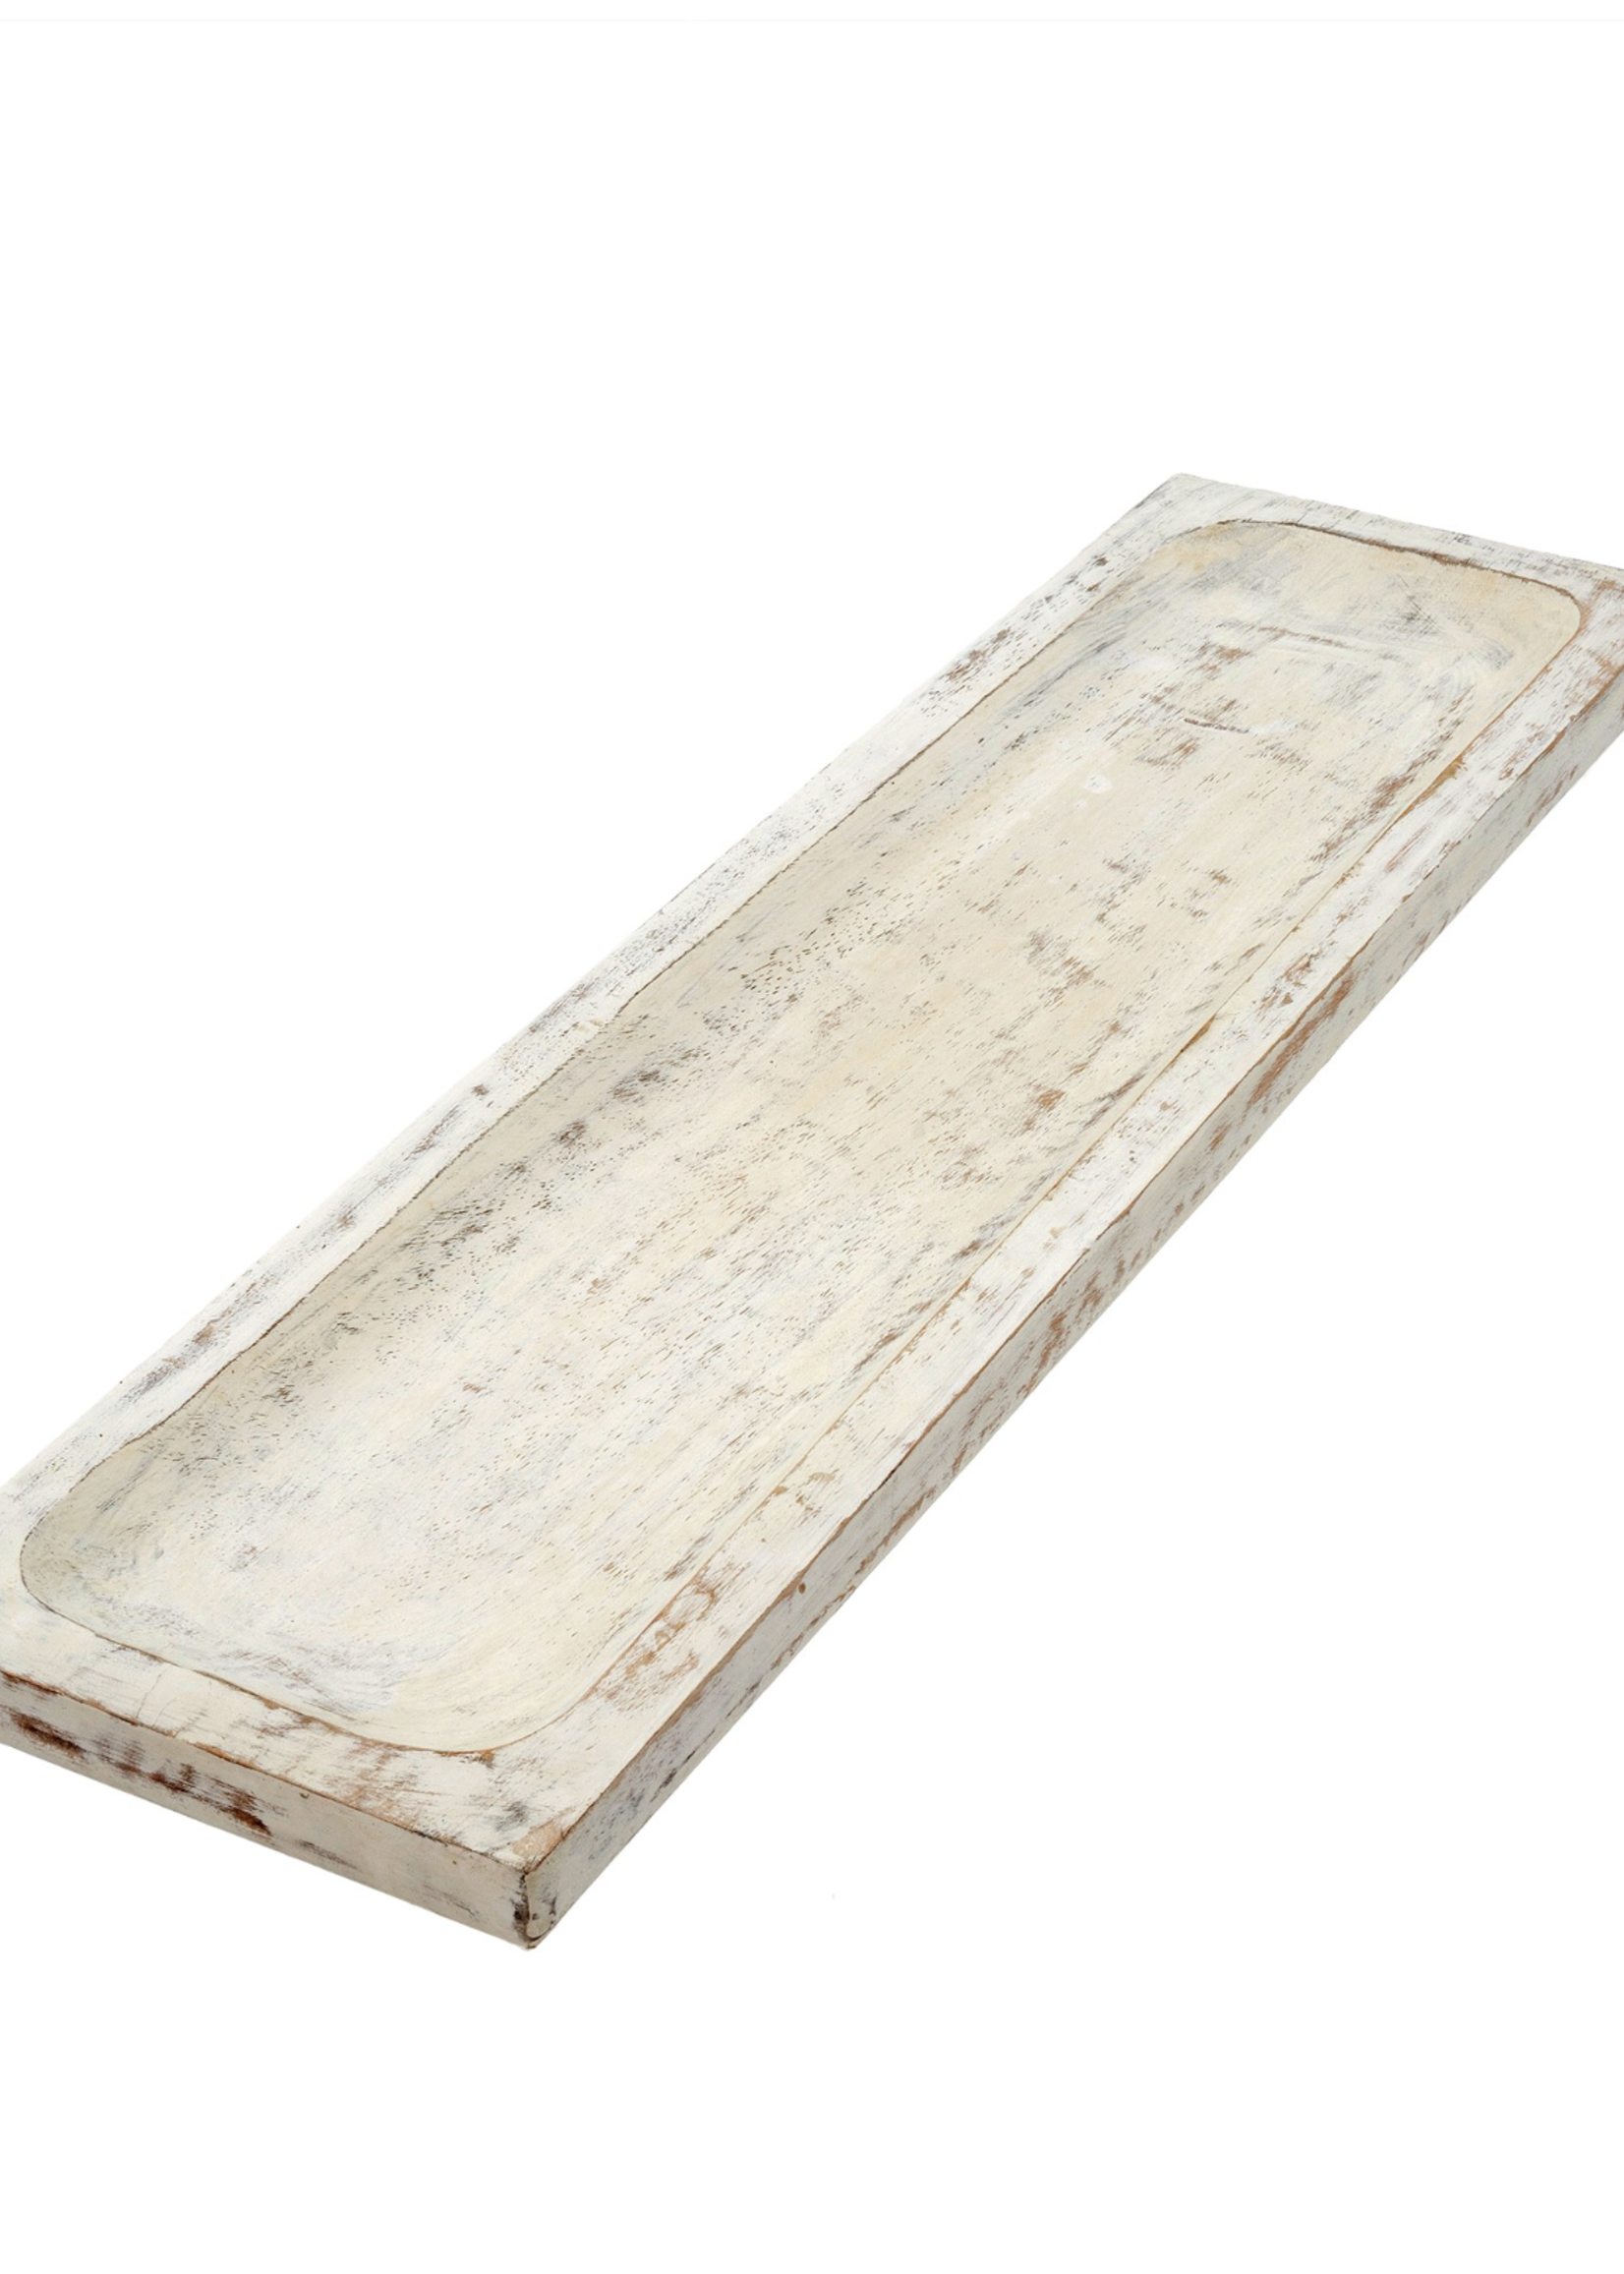 Indaba Trading Co Wooden Long Tray | Whitewash